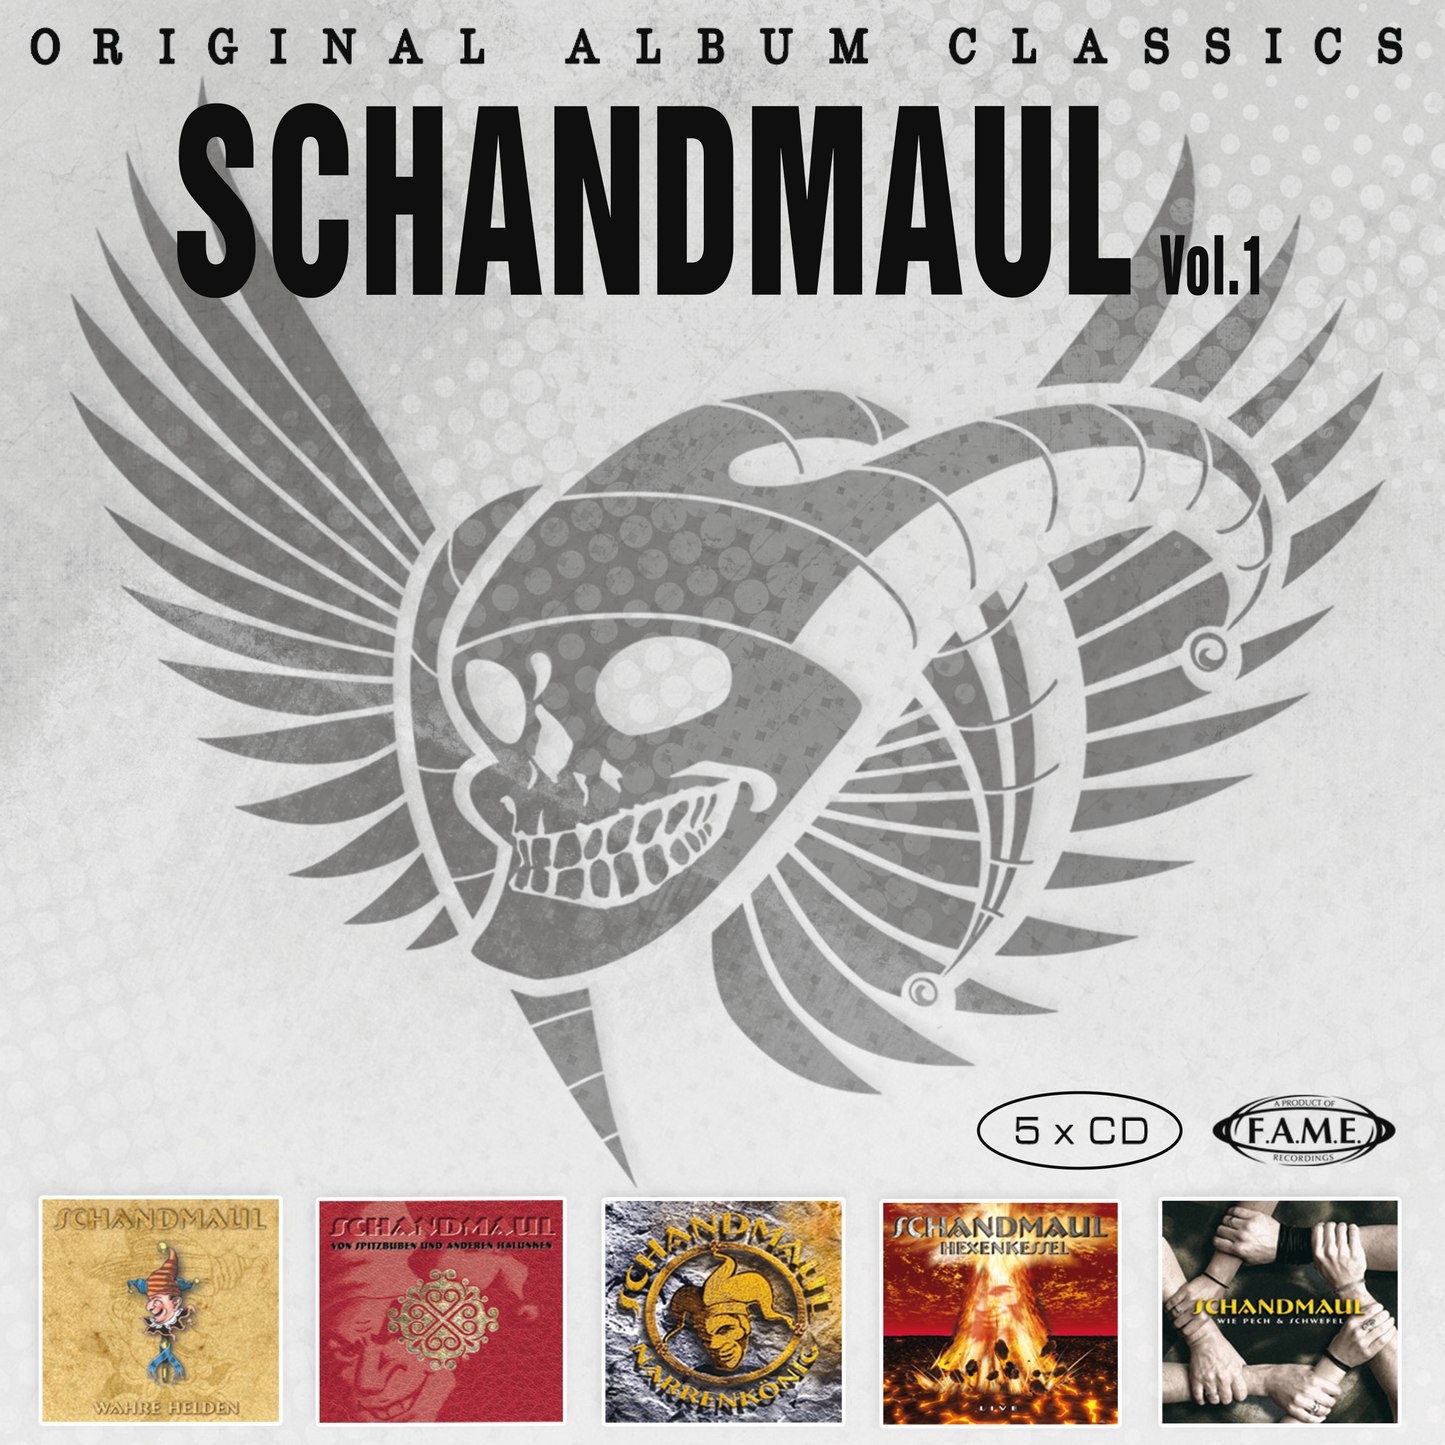 SCHANDMAUL - Original Album Classics Vol. 1 Box-Set